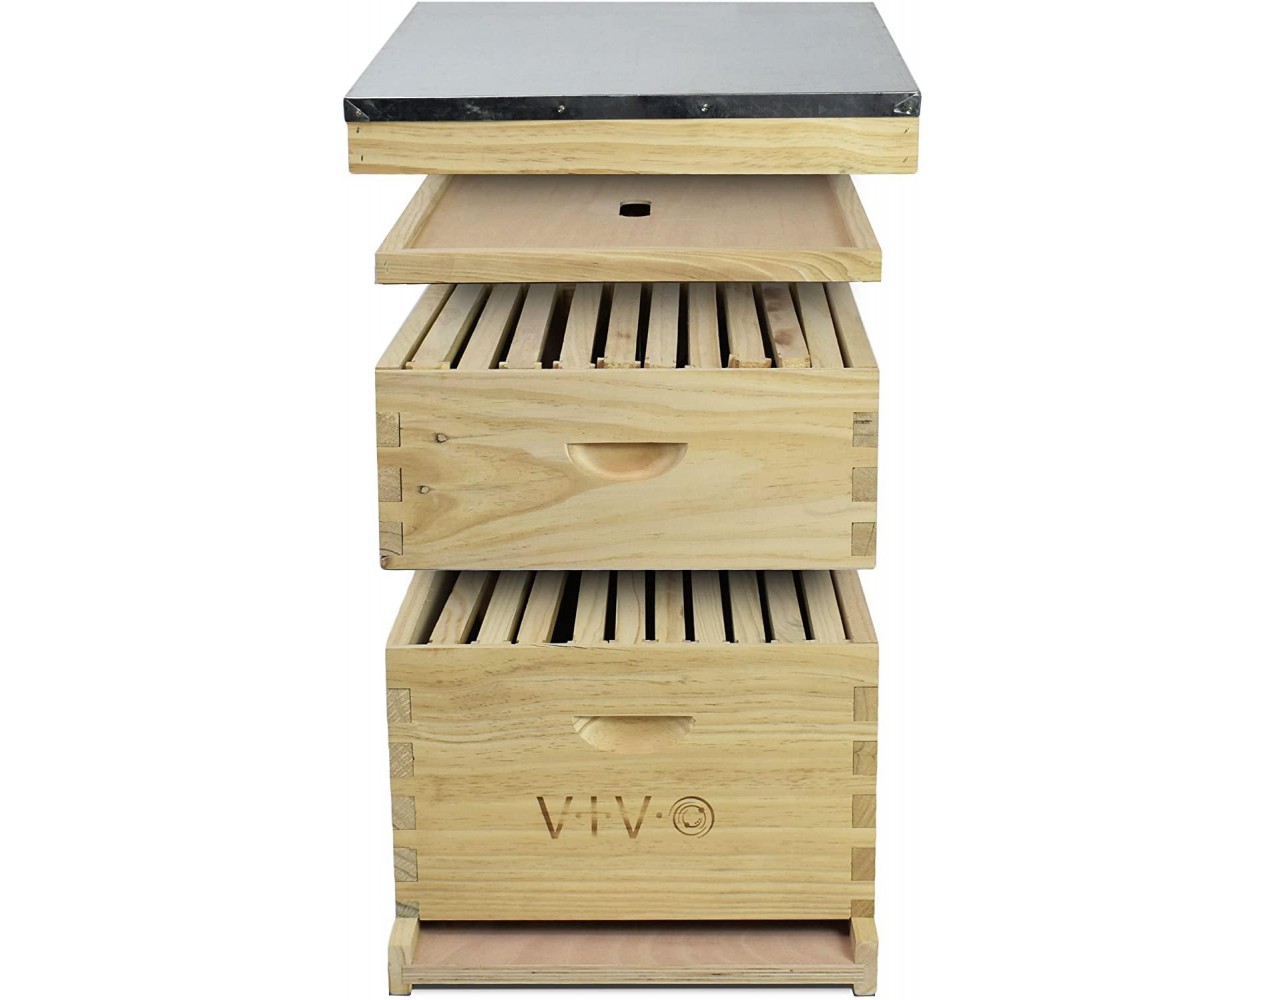 VIVO Complete Beekeeping 20 Frame Beehive Box Kit, 10 Medium, 10 